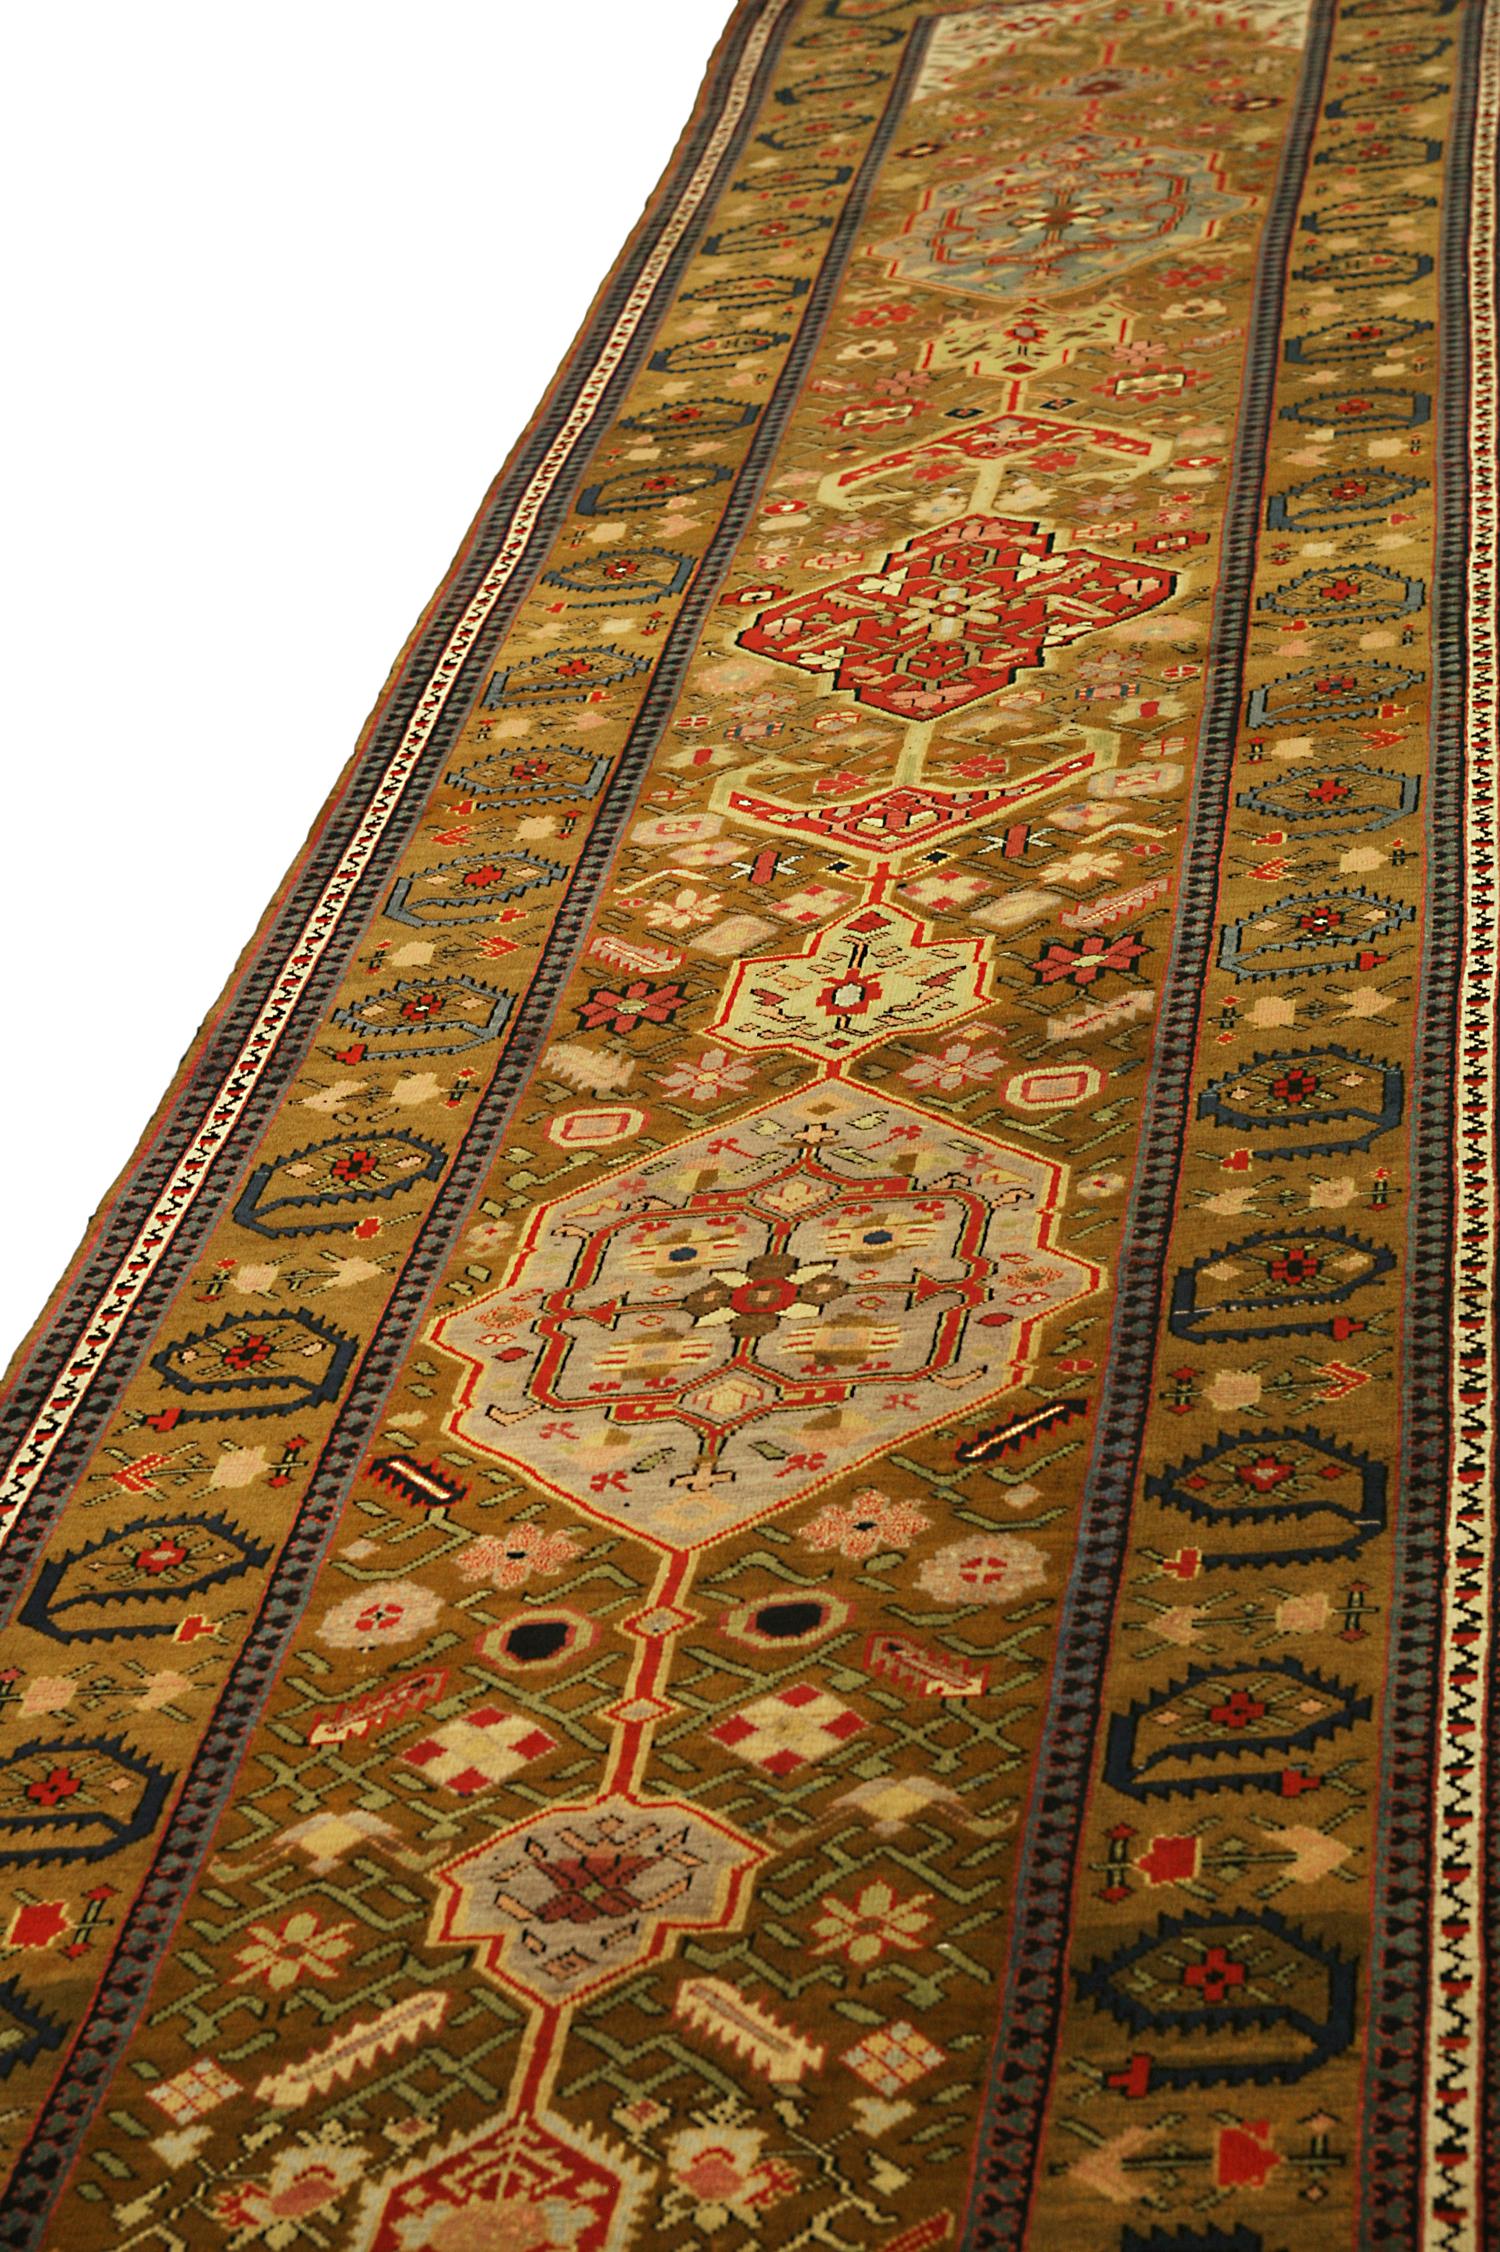 Il s'agit d'un tapis de course antique Karabagh tissé vers 1880, dont le design est frappant à première vue. Le brun foncé de l'arrière-plan attire l'attention sur les motifs floraux d'une manière intrigante. Les coureurs du Karabagh, comme ce tapis